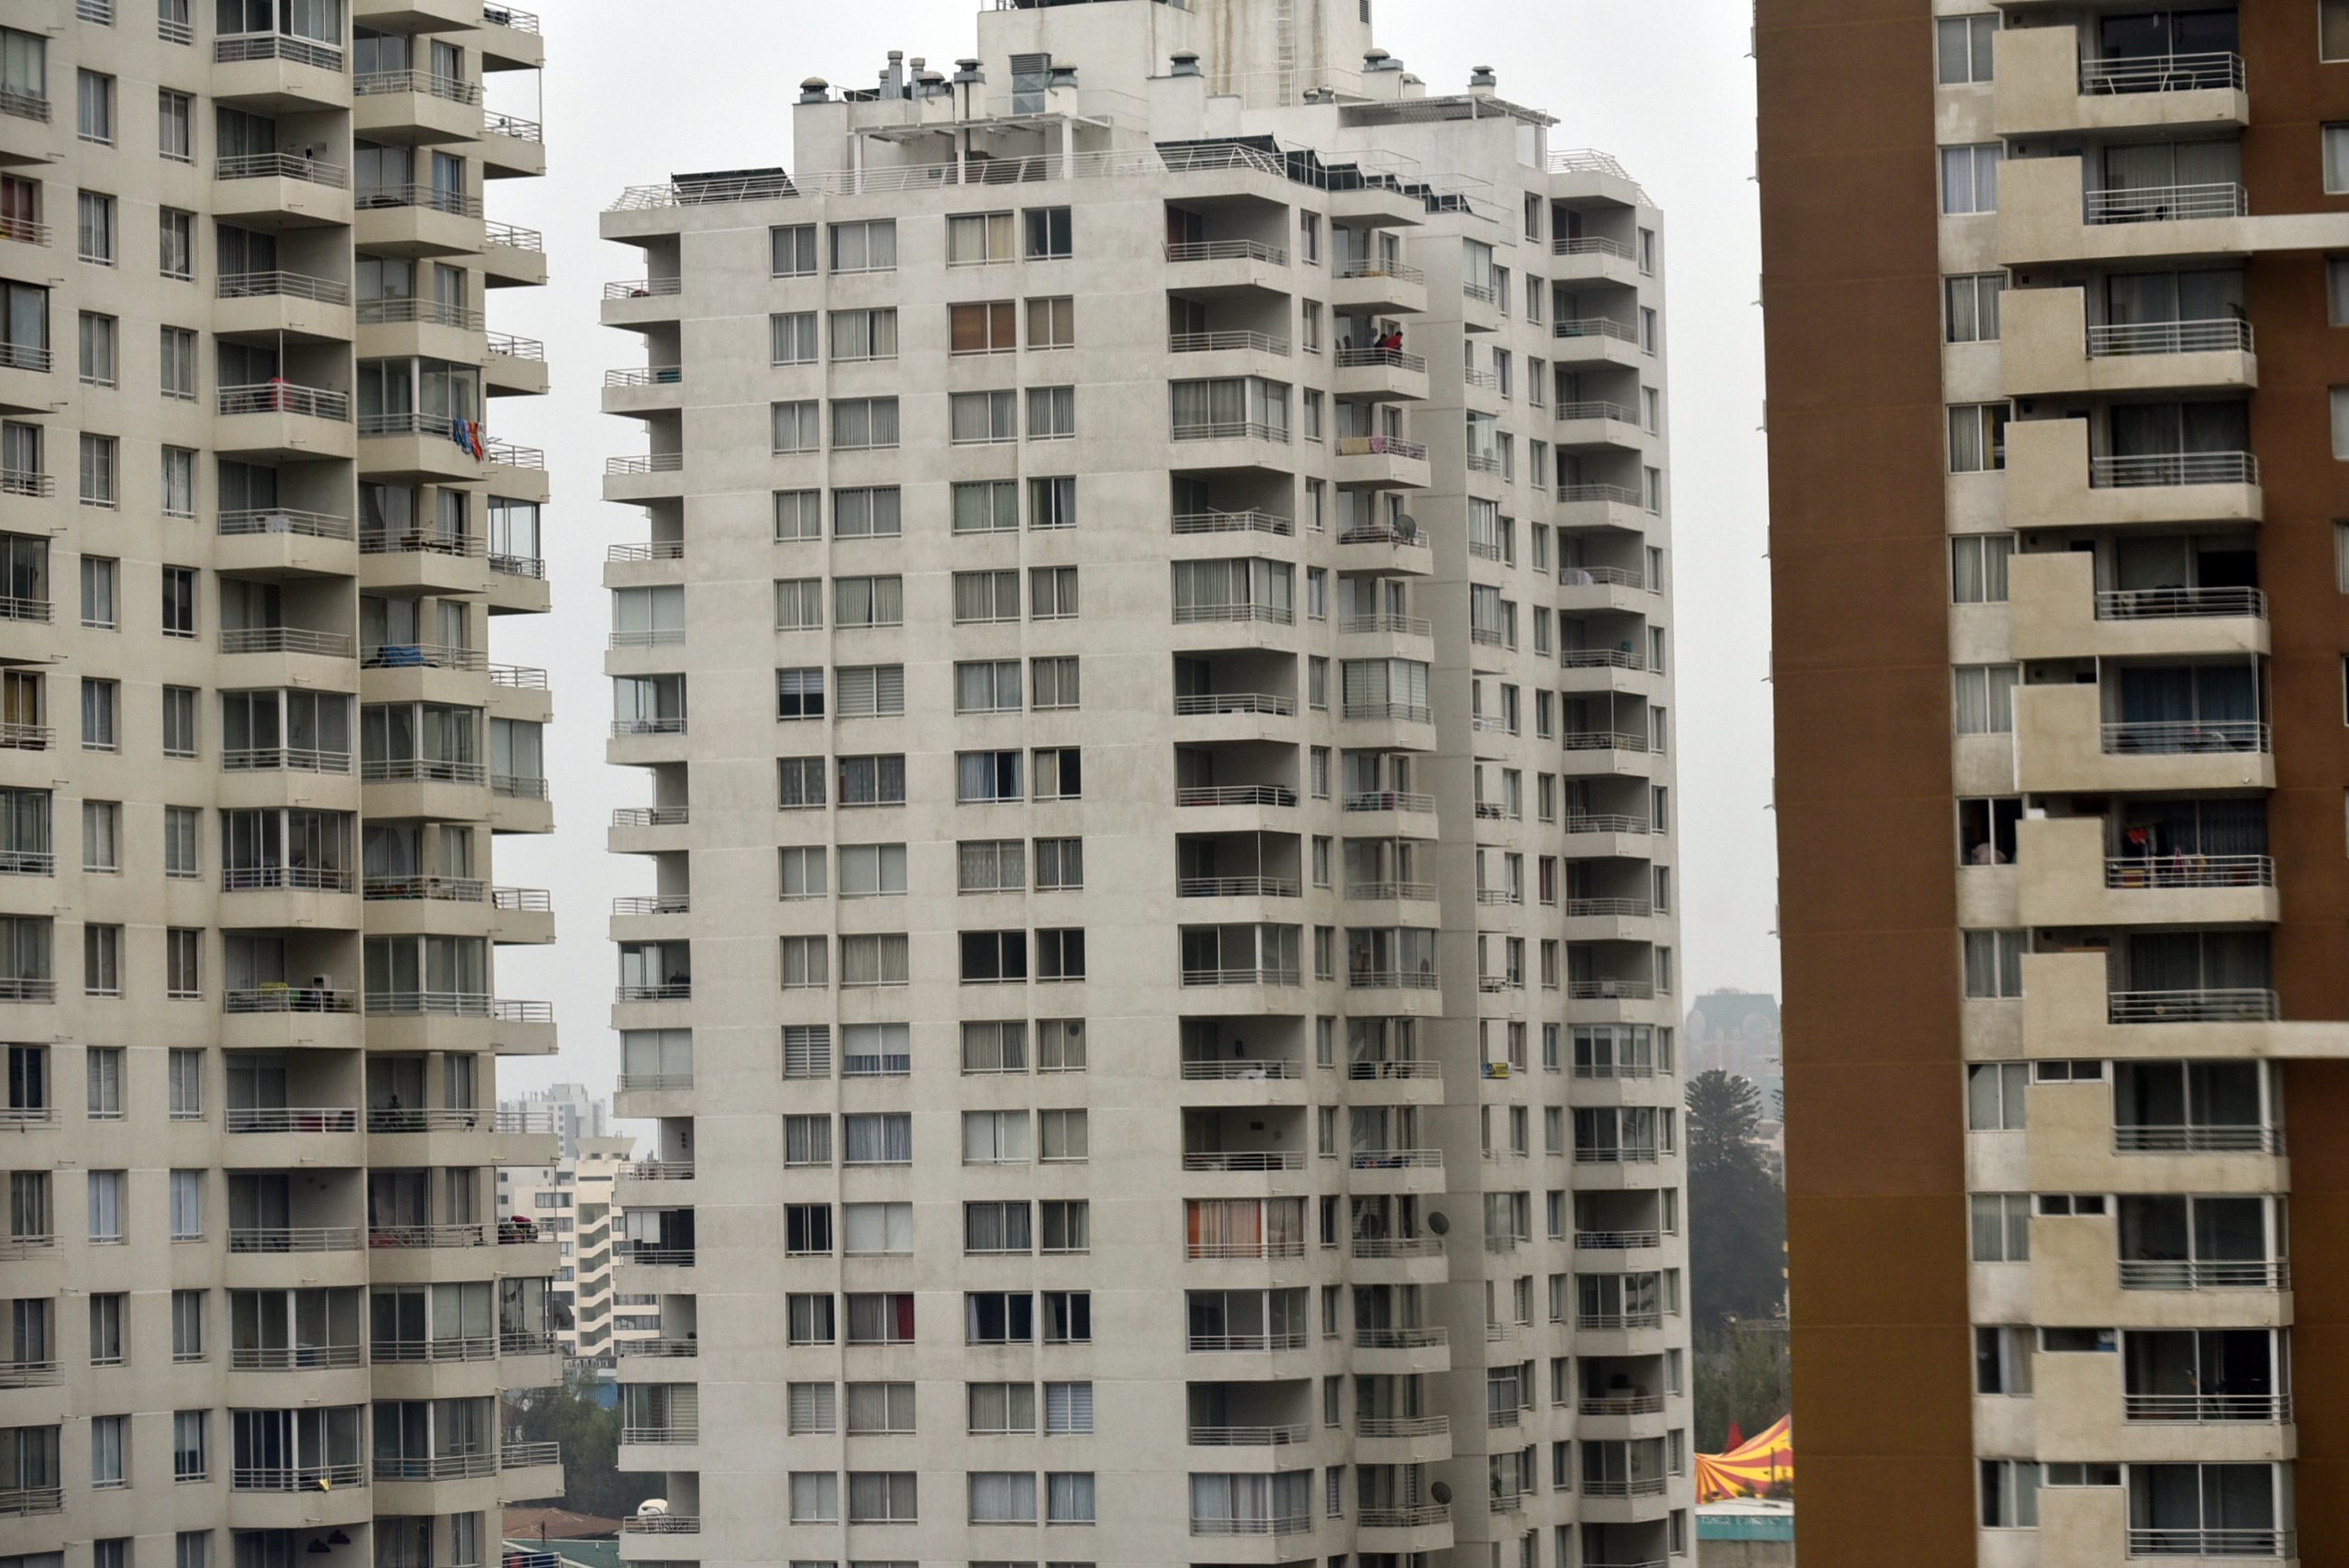 Índice de acceso a la vivienda: propiedades en Chile son severamente no alcanzables